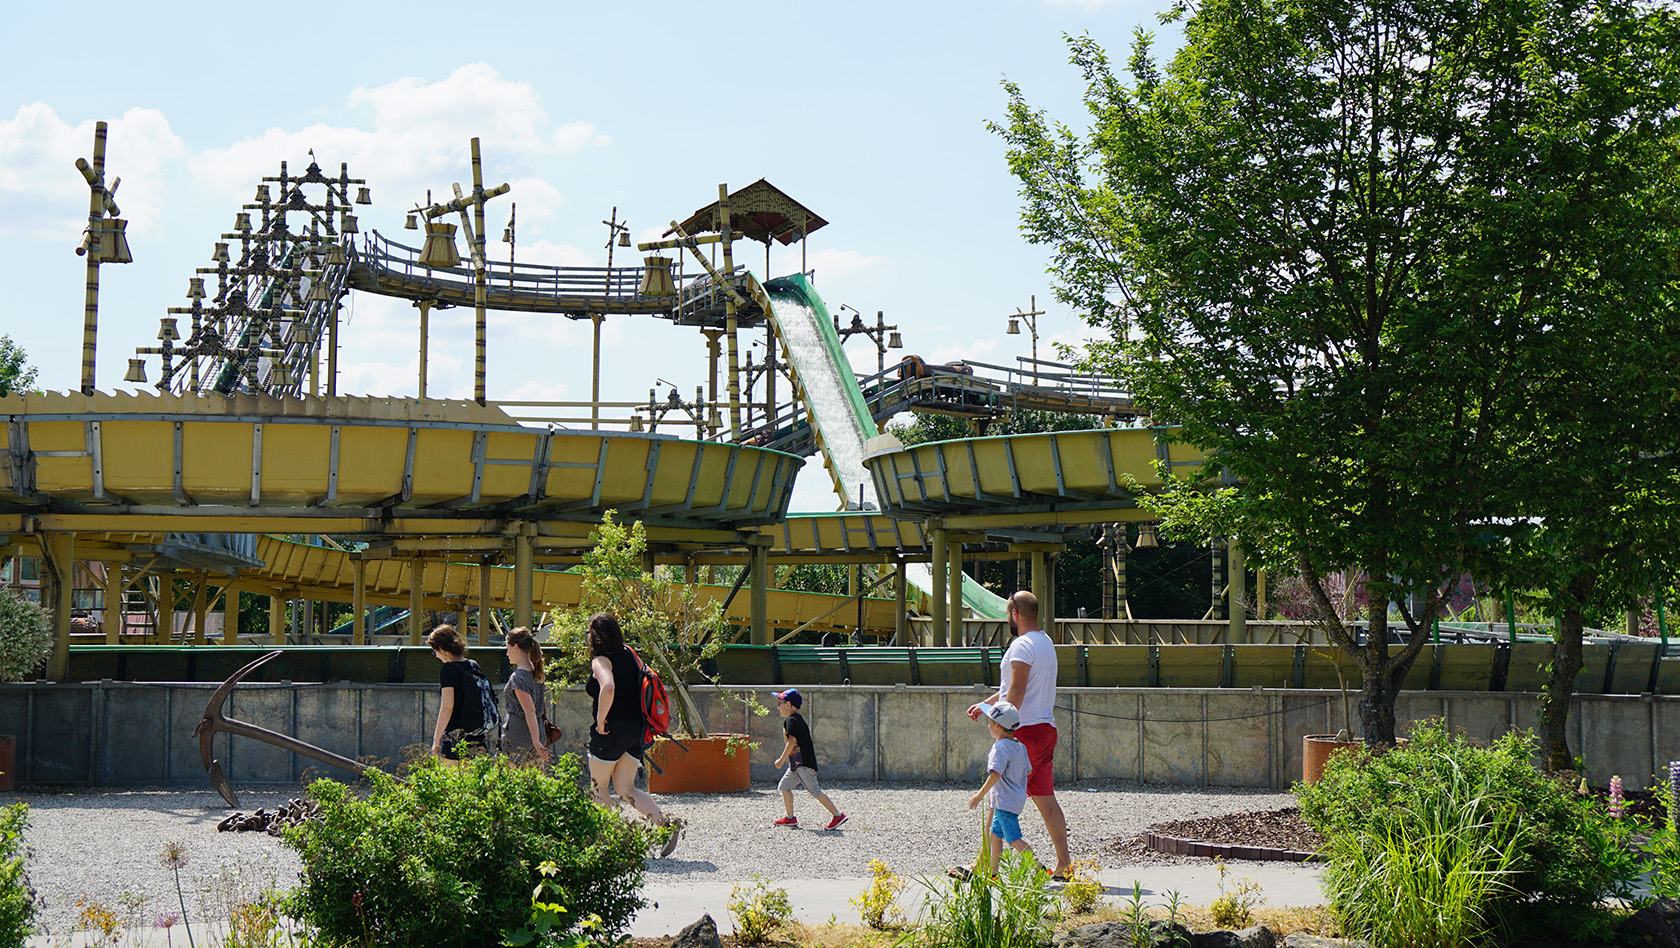 Skyline Park Pirateninsel-Wildwasserbahn